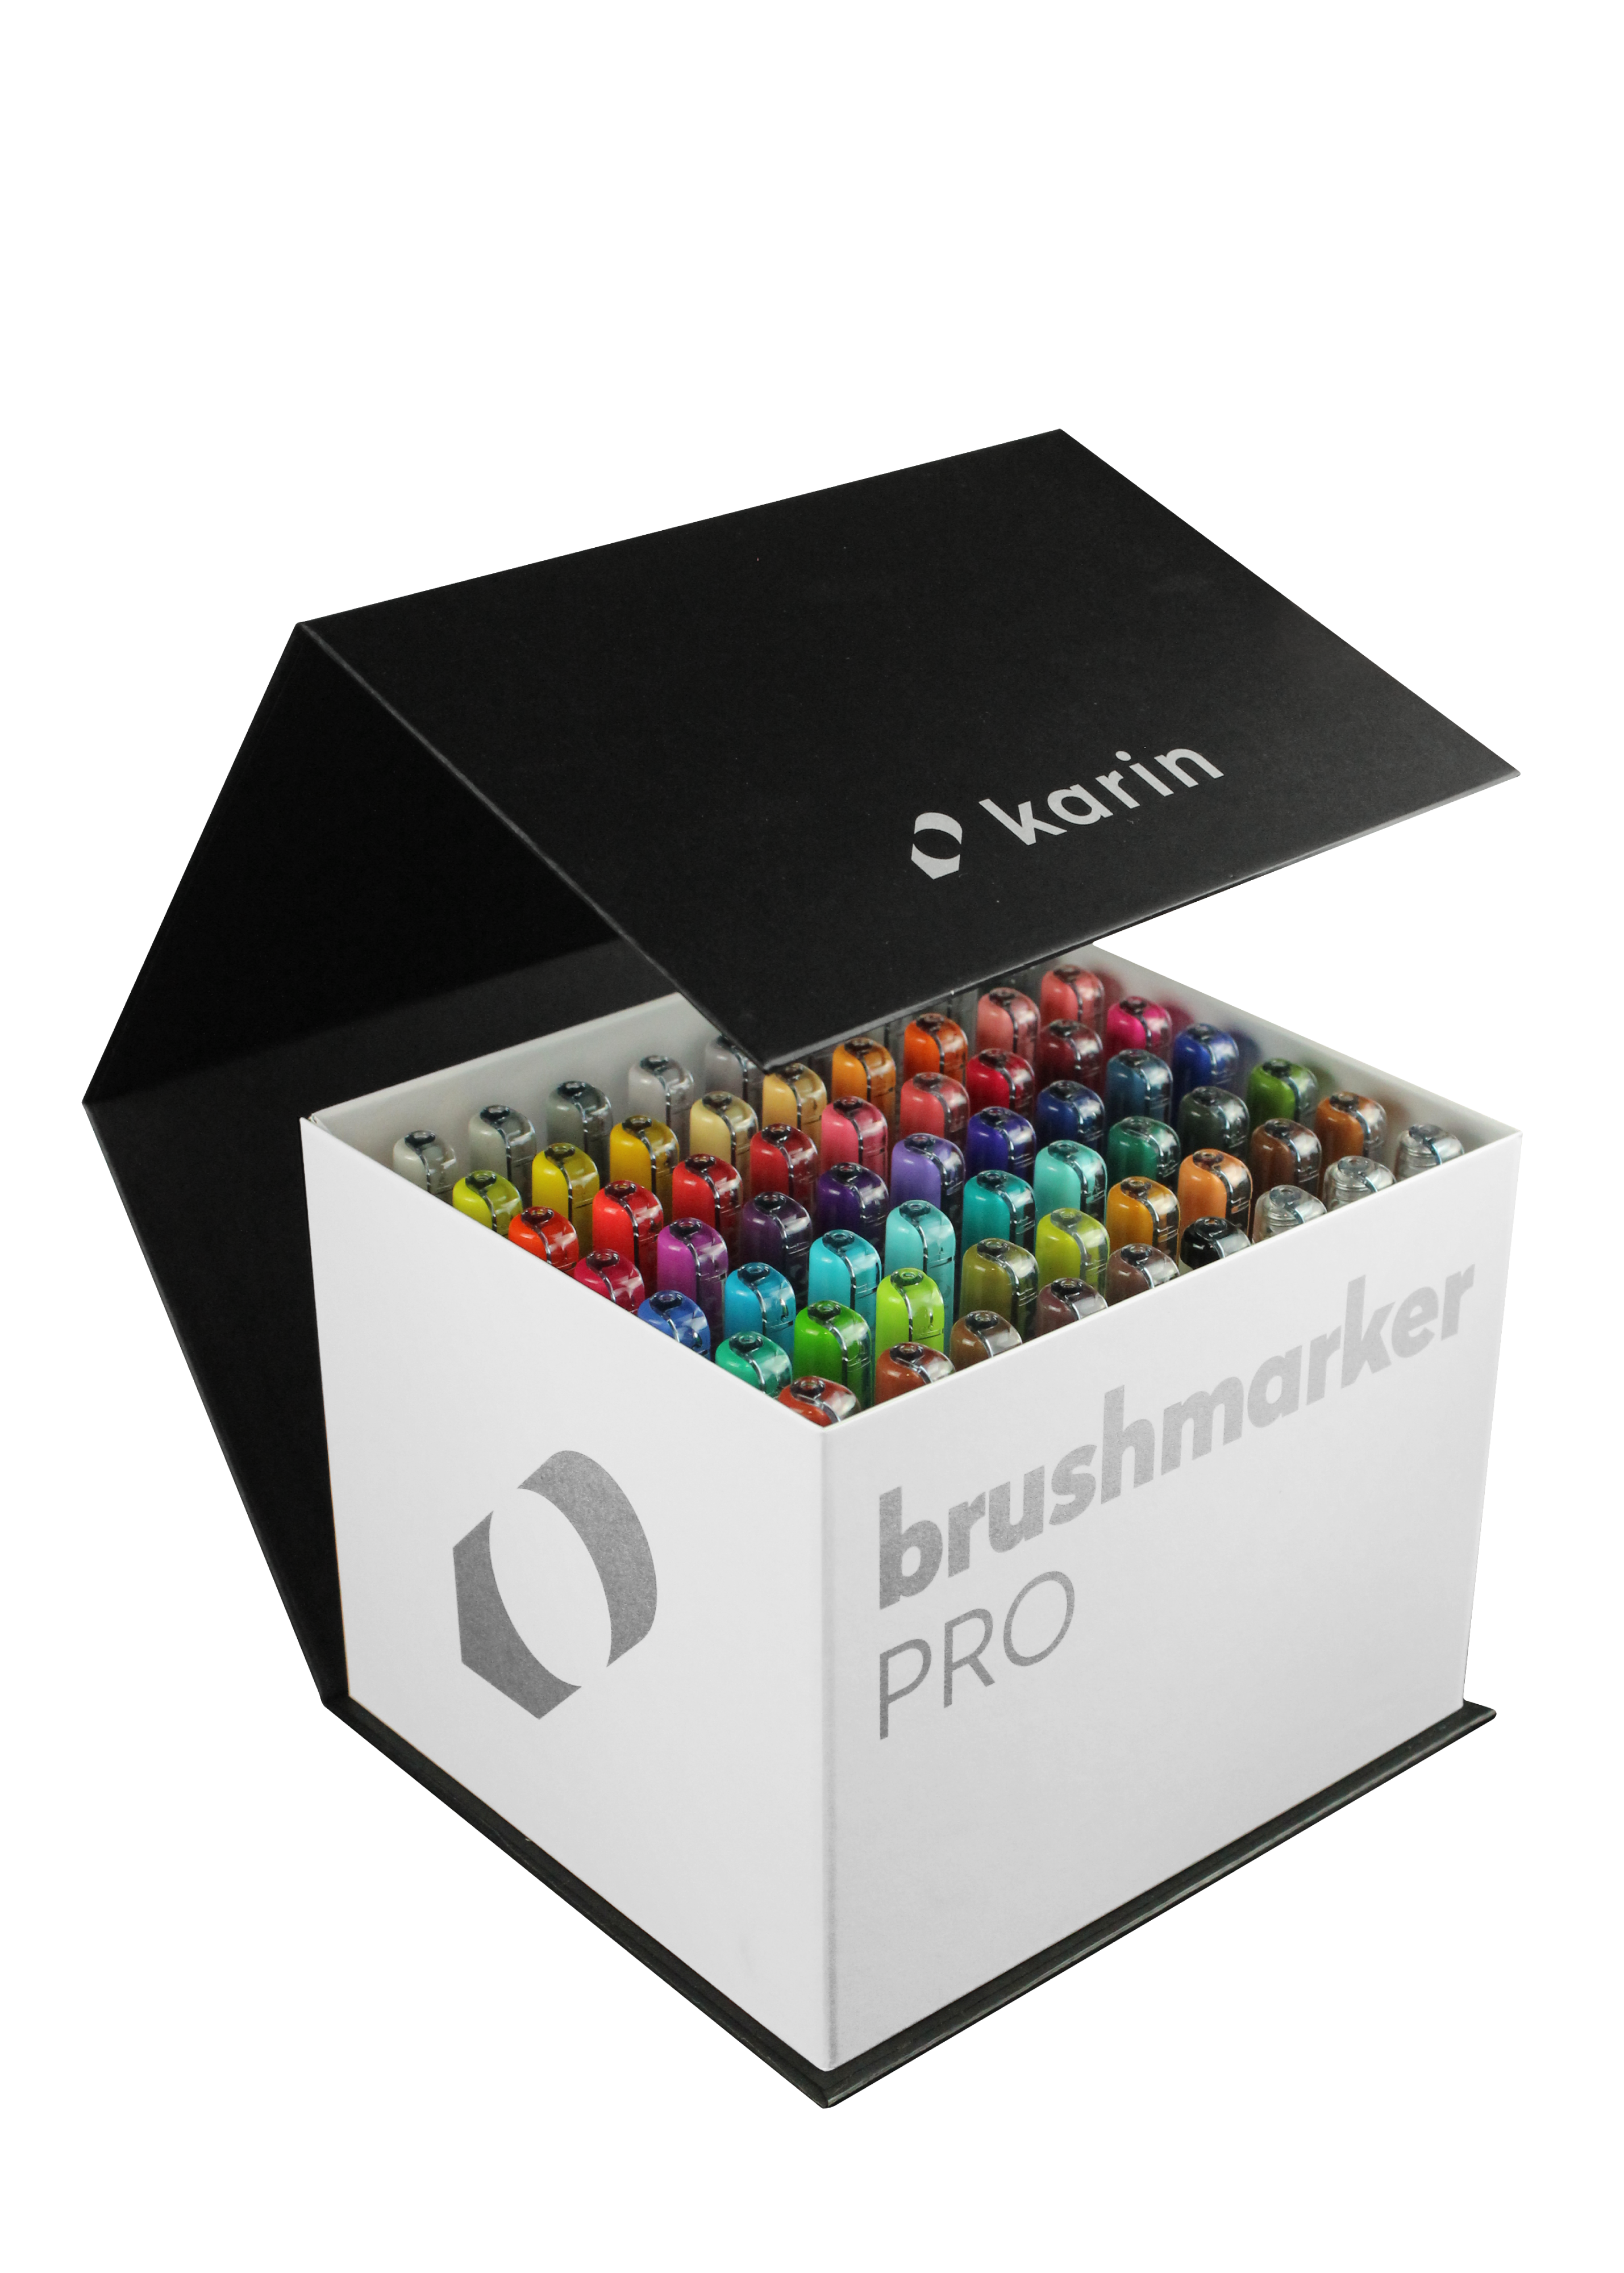 BrushmarkerPRO | MegaBox 60 colours + 3 blenders